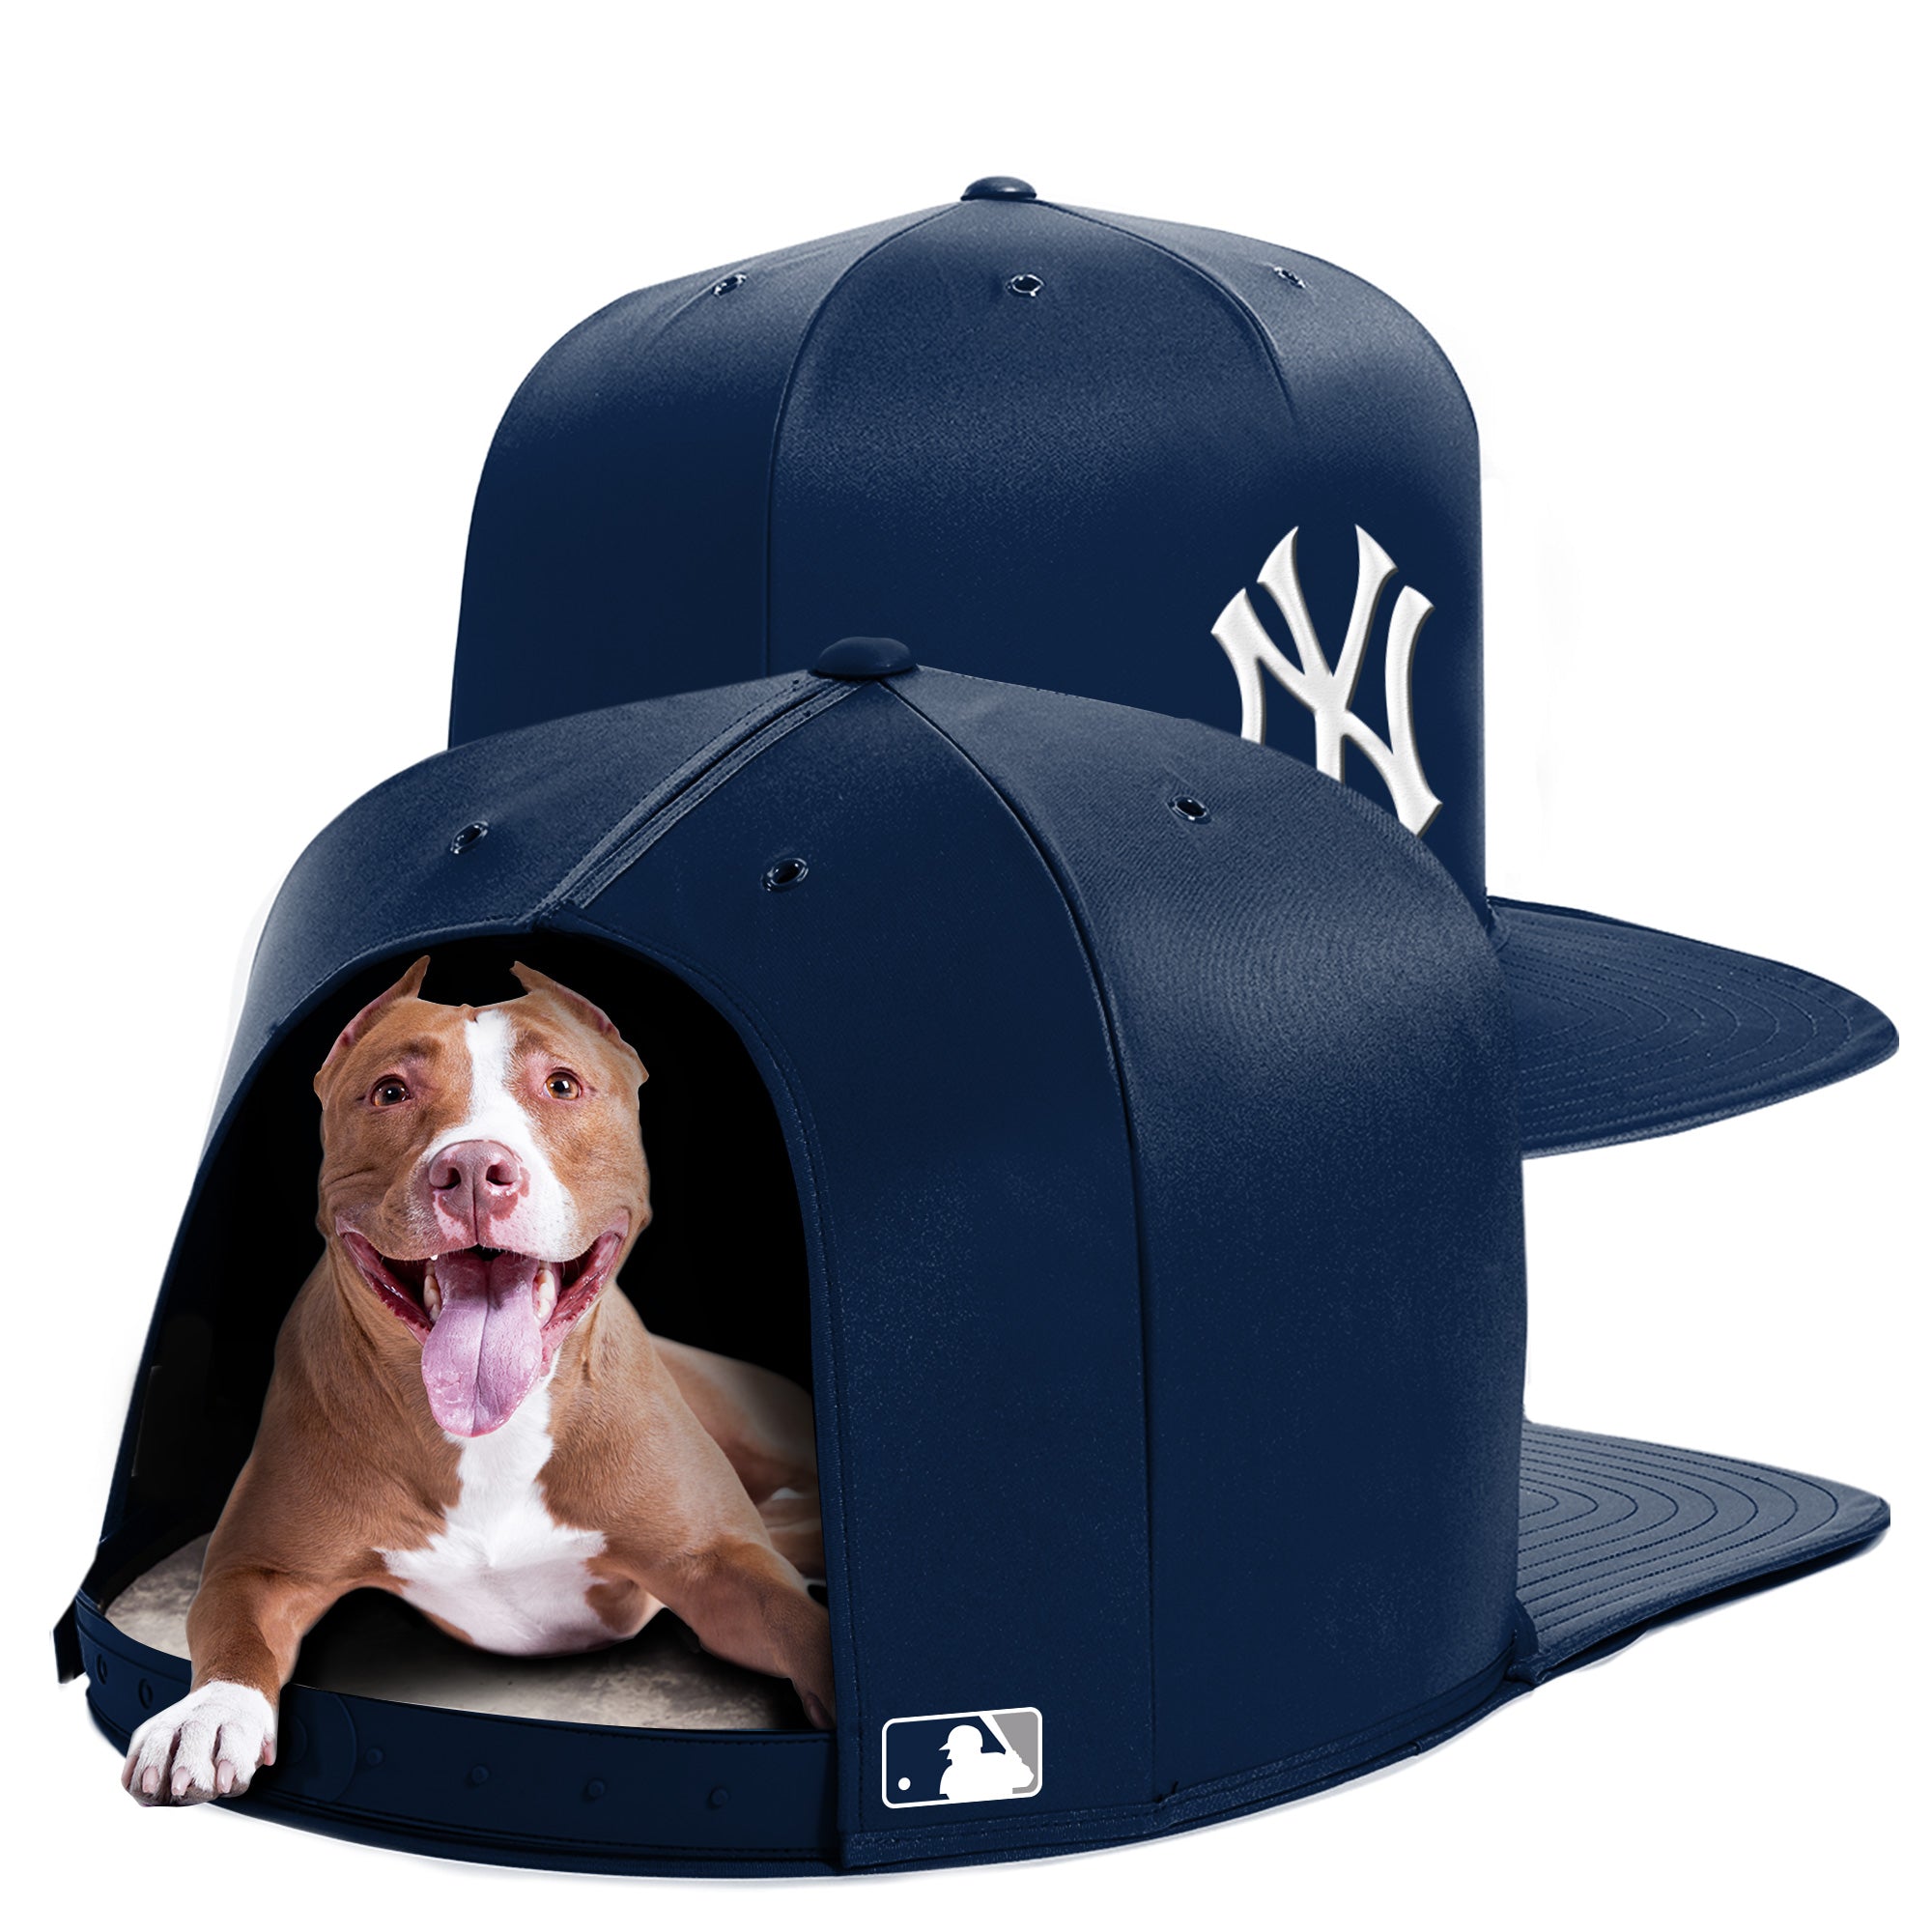 NEW YORK YANKEES NAP CAP PREMIUM DOG BED